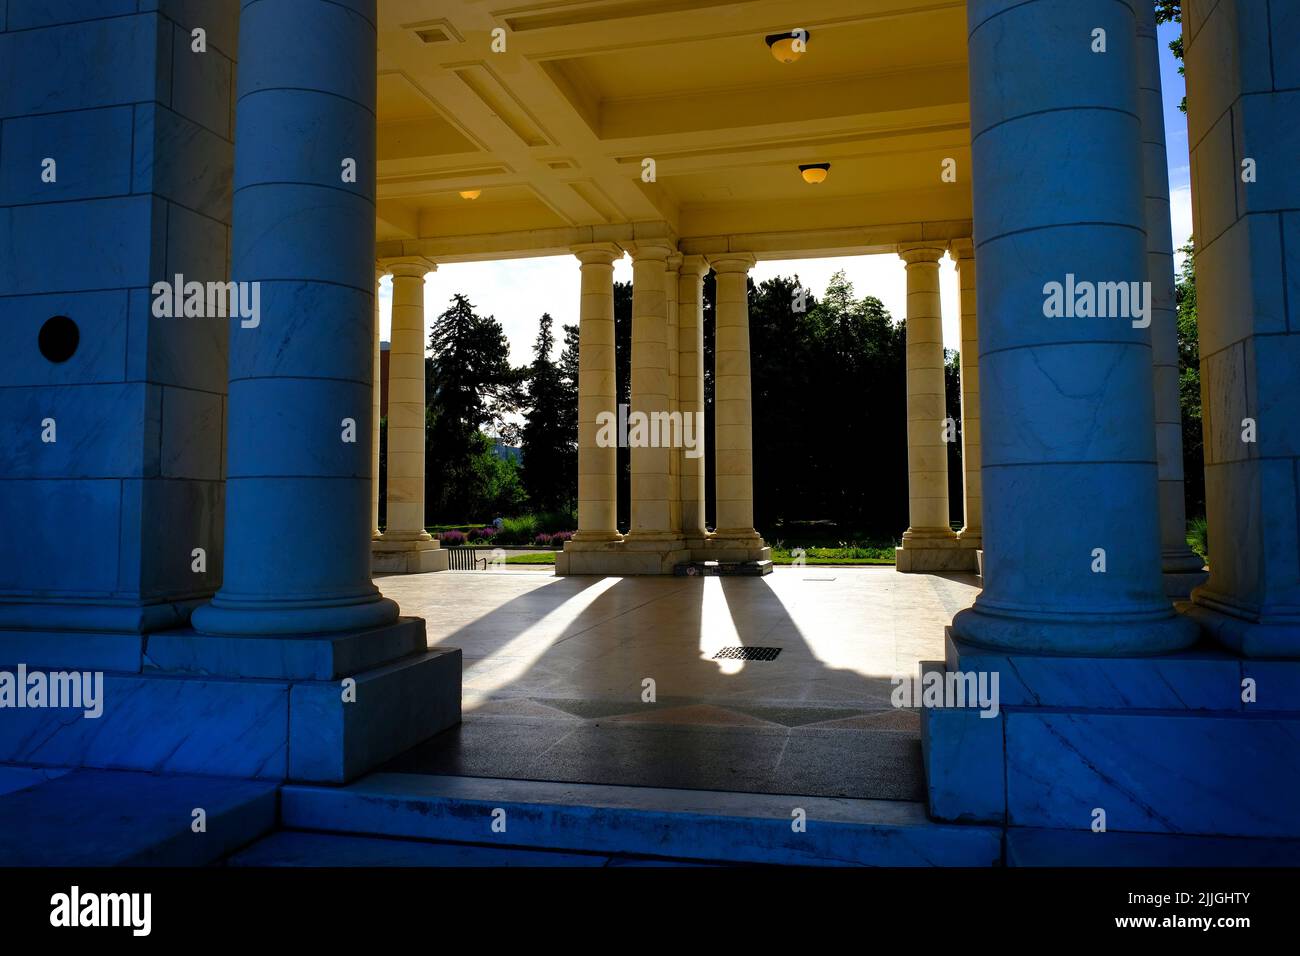 Columnas de mármol en un pabellón de construcción que muestran el diseño arquitectónico y la estructura decorativa con luz y sombras Foto de stock